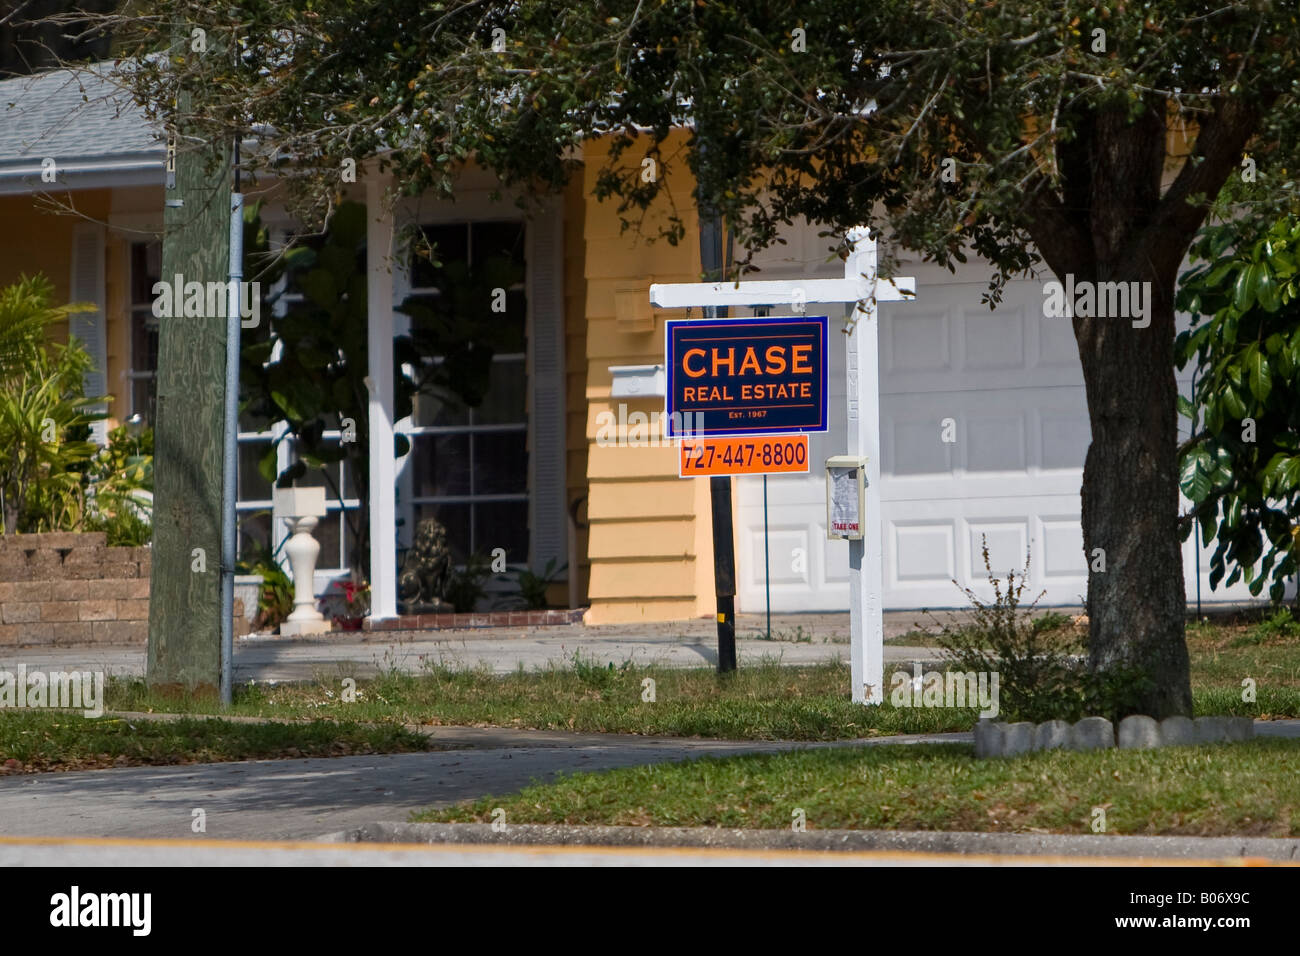 Chase Immobilier Vente signe devant une résidence Banque D'Images